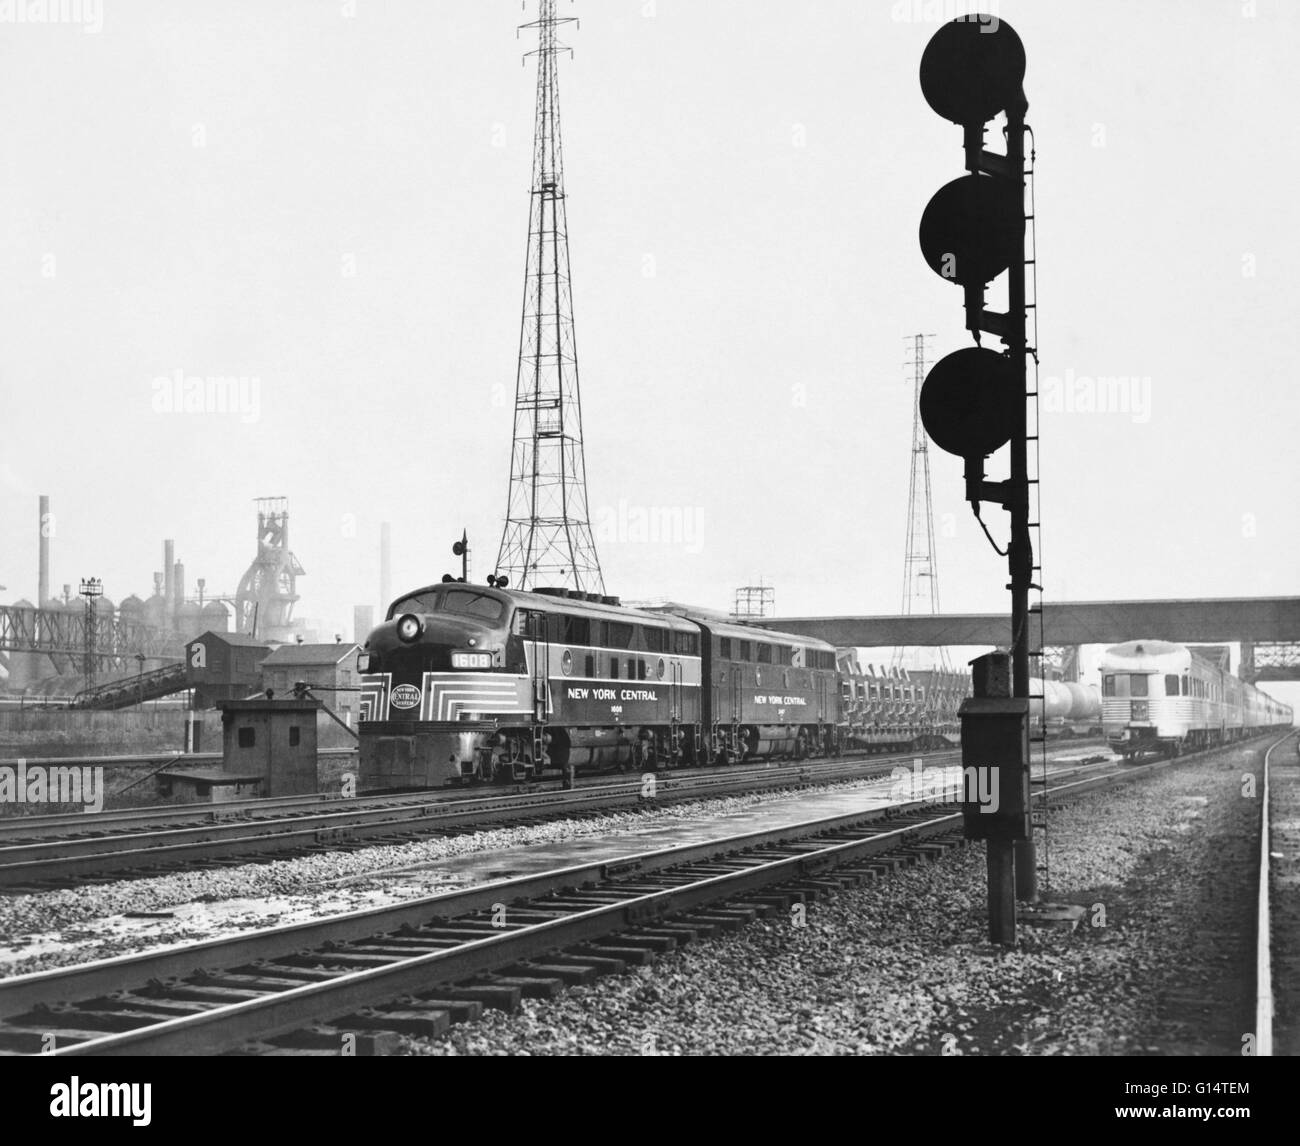 Historisches Bild eines New York Central Railroad Güterzugs, geglaubt, um eine EMD E8, wie es geht die Stahlwerke an Indiana Harbor, Indiana, an der New York Central Buffalo-Chicago Line. Stockfoto